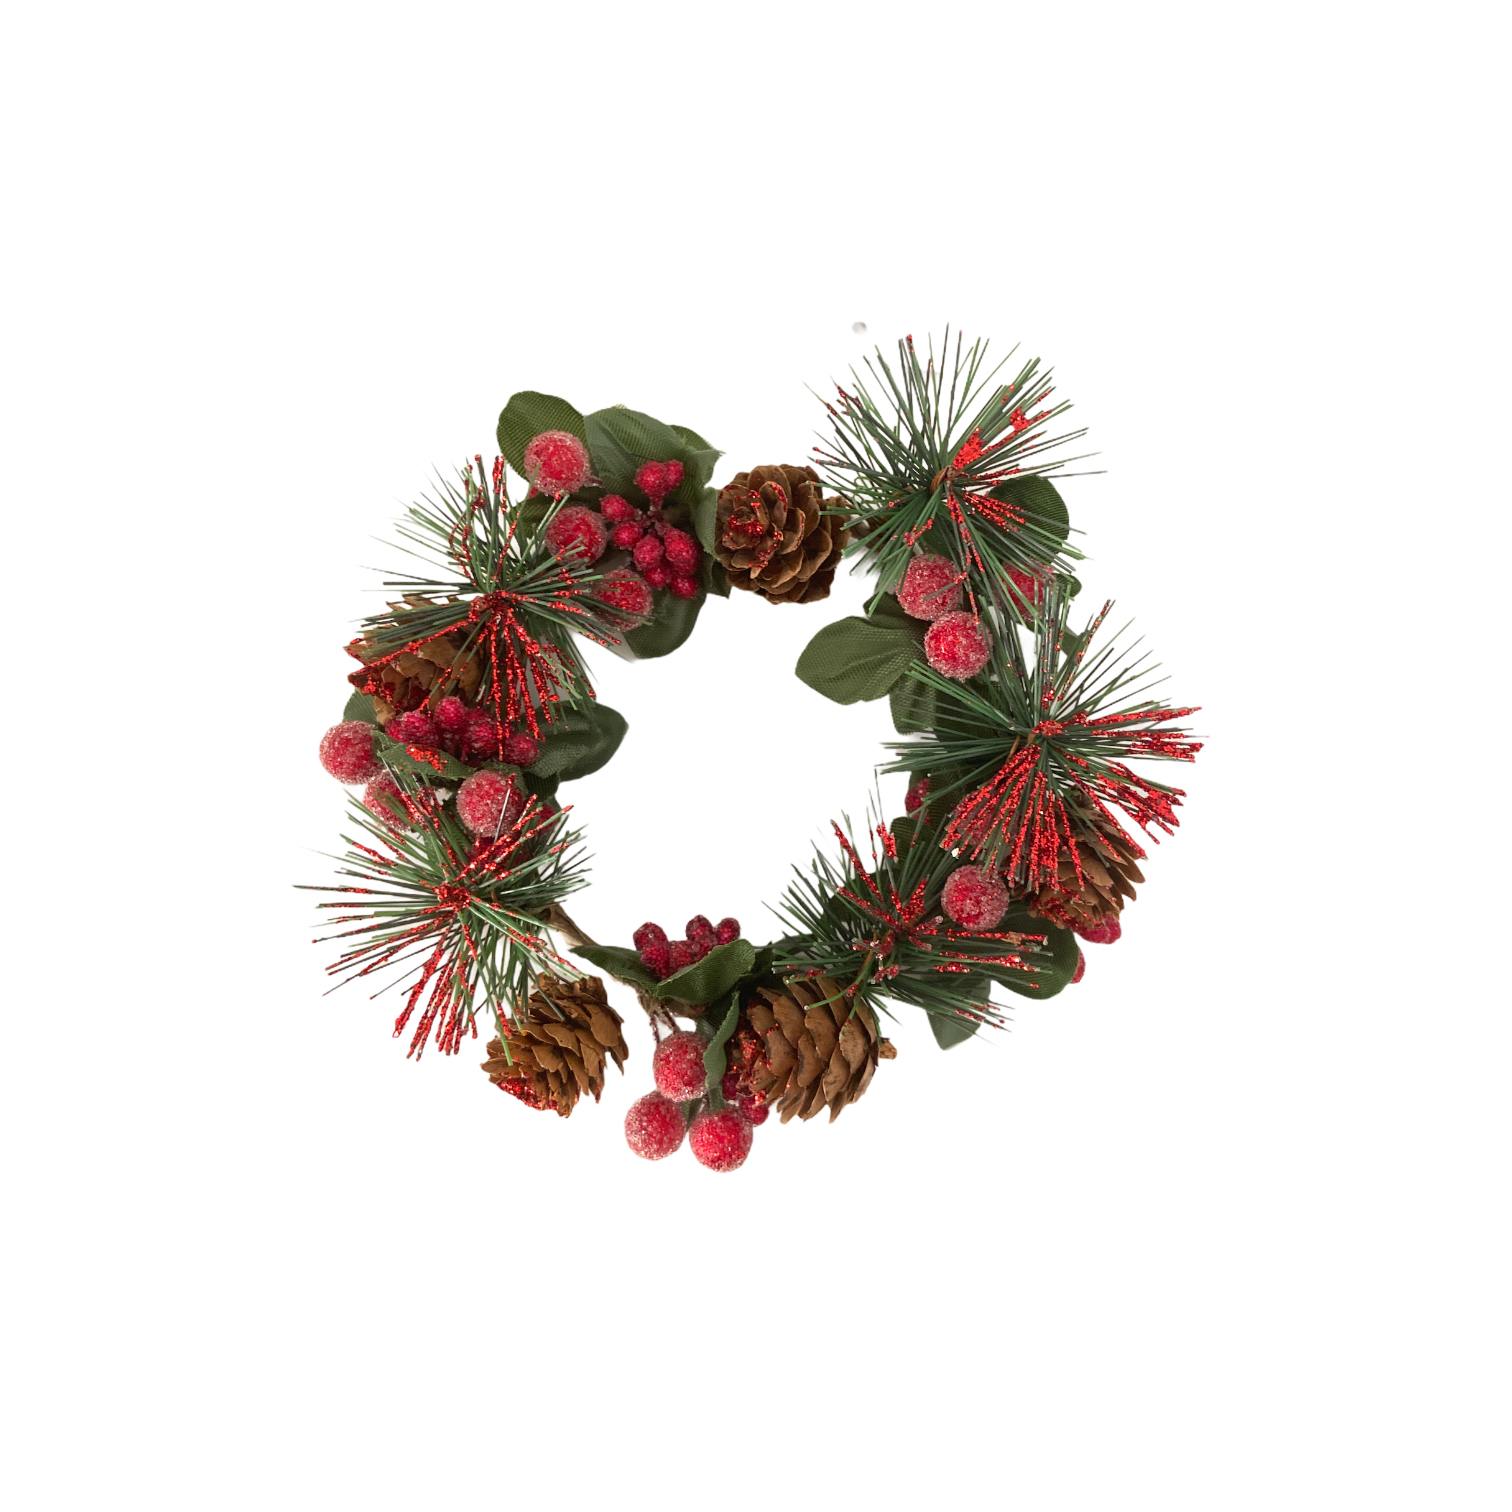 Χριστουγεννιάτικο Διακοσμητικό Στεφάνι Πιατέλας Κουκουνάρια Berries 12cm